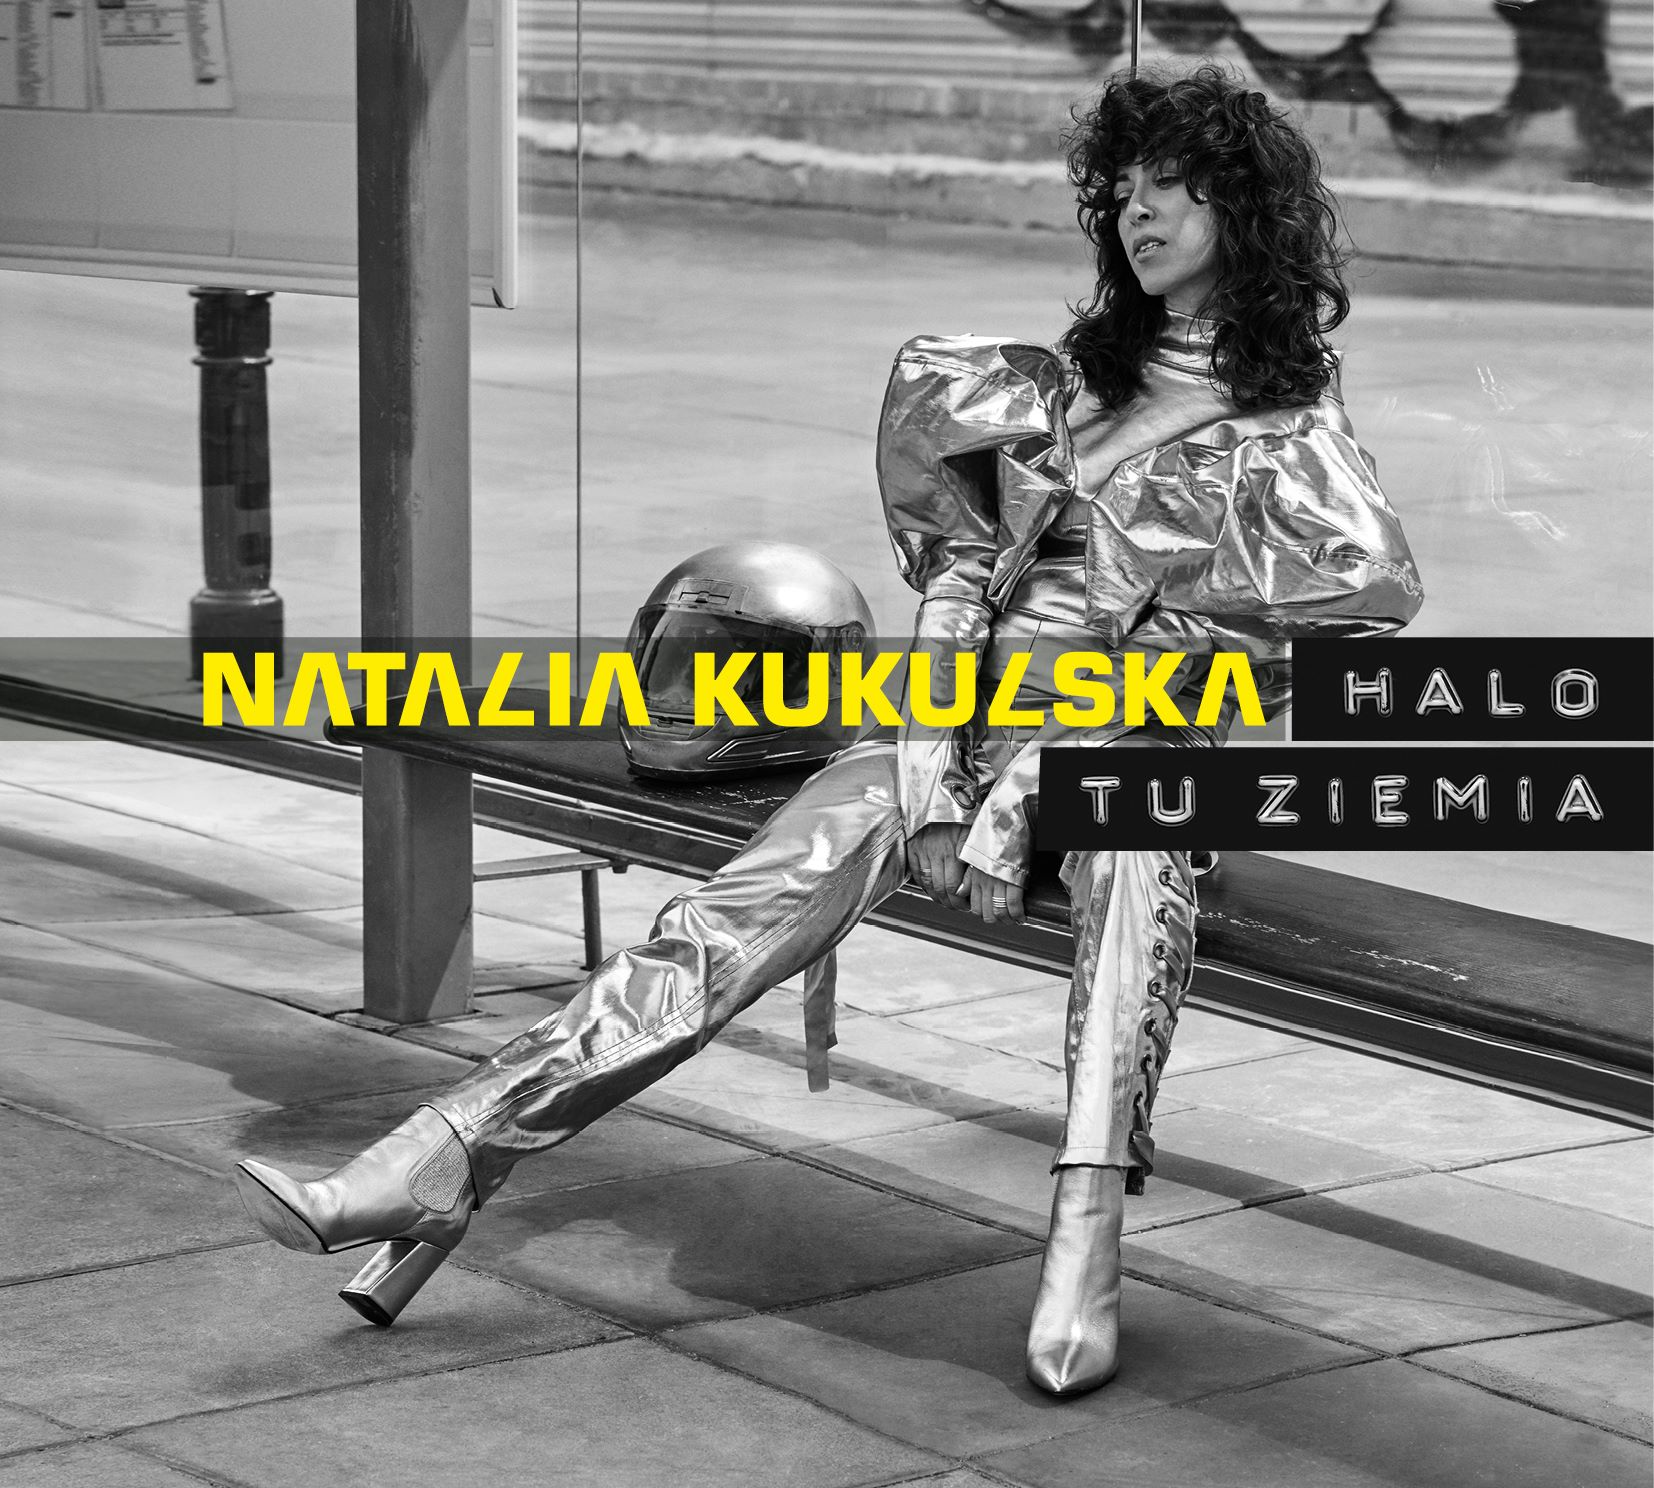 Natalia Kukulska